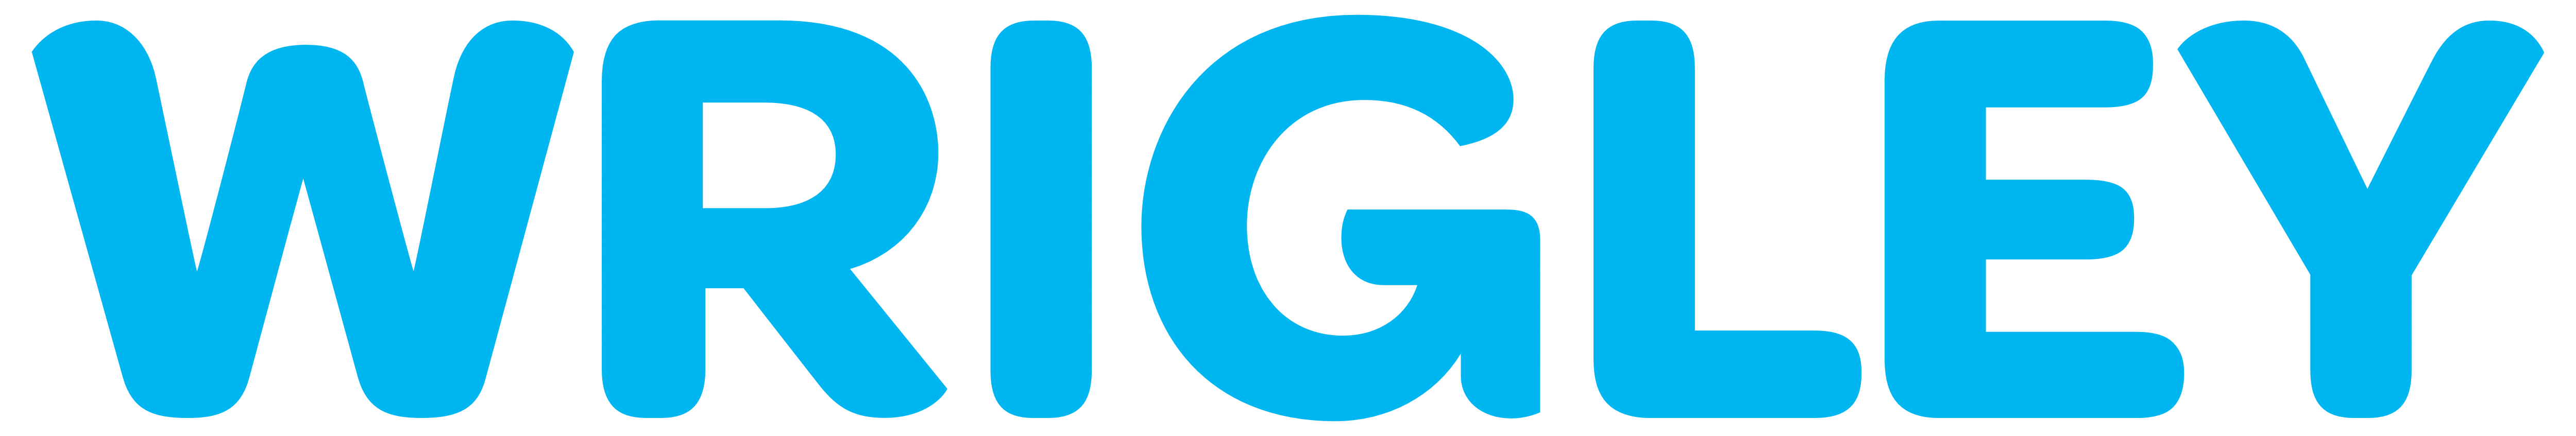 Wrigley Logo - Wrigley – Logos Download